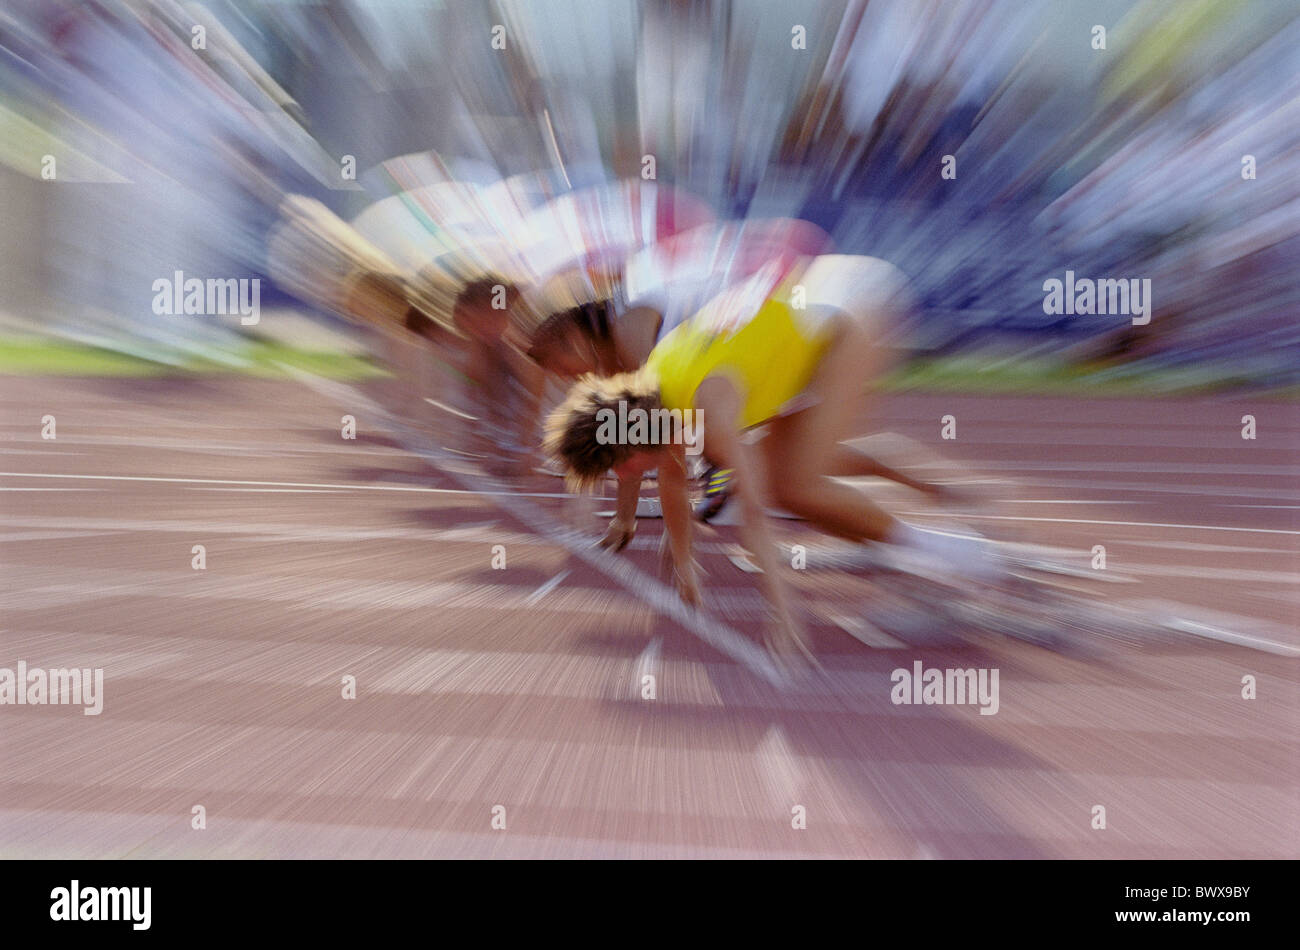 Le sport de courtes distances exécuter le modèle ne libération athlètes phase démarrage effet zoom Banque D'Images